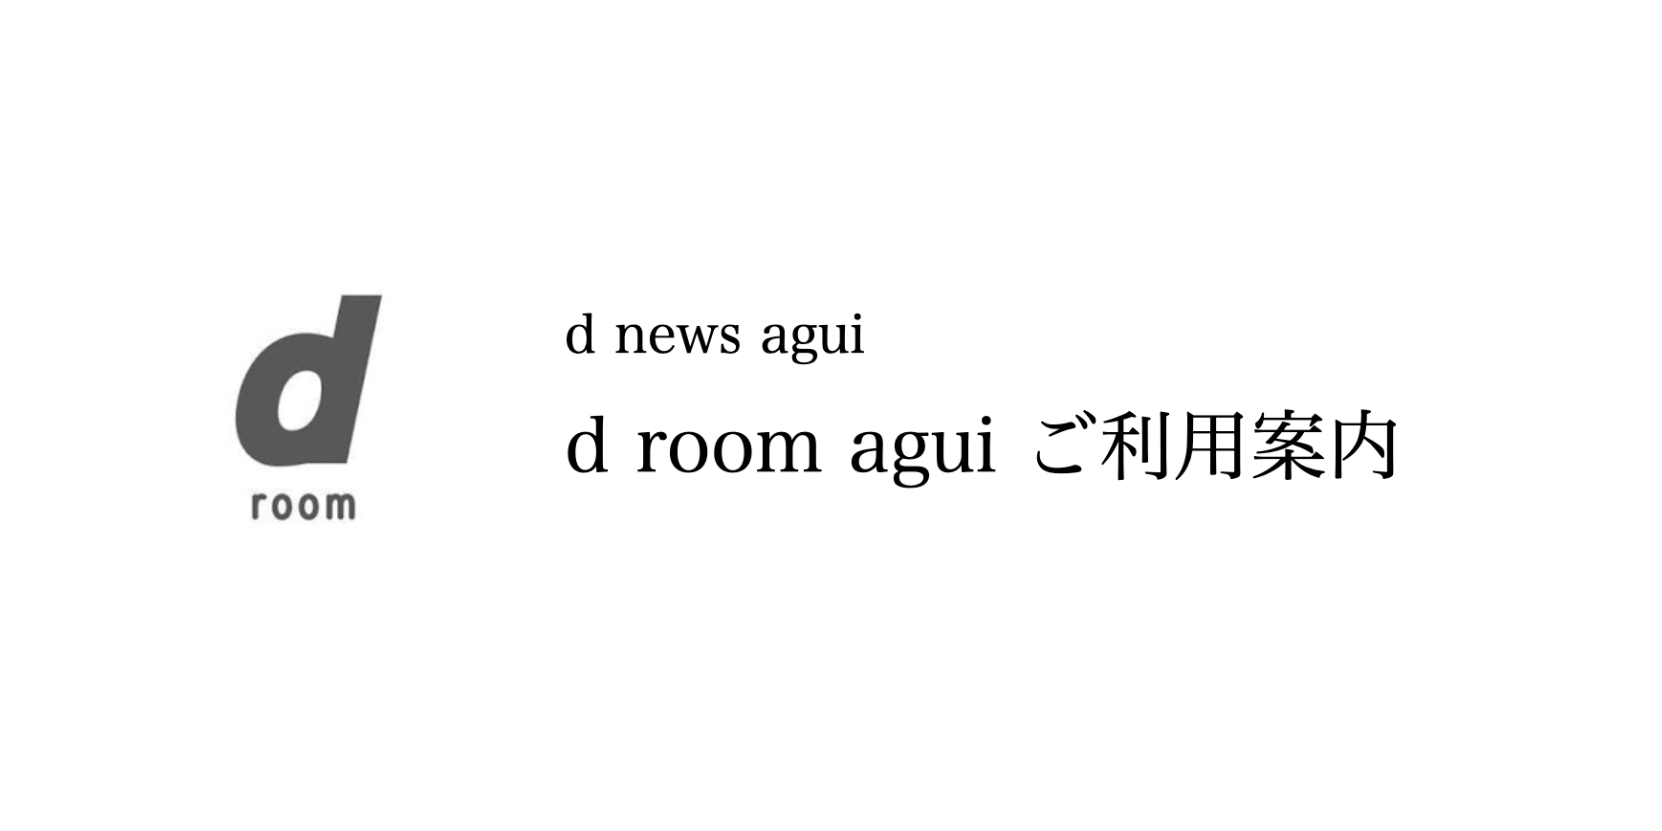 d news aichi agui生産者ツアーレポート